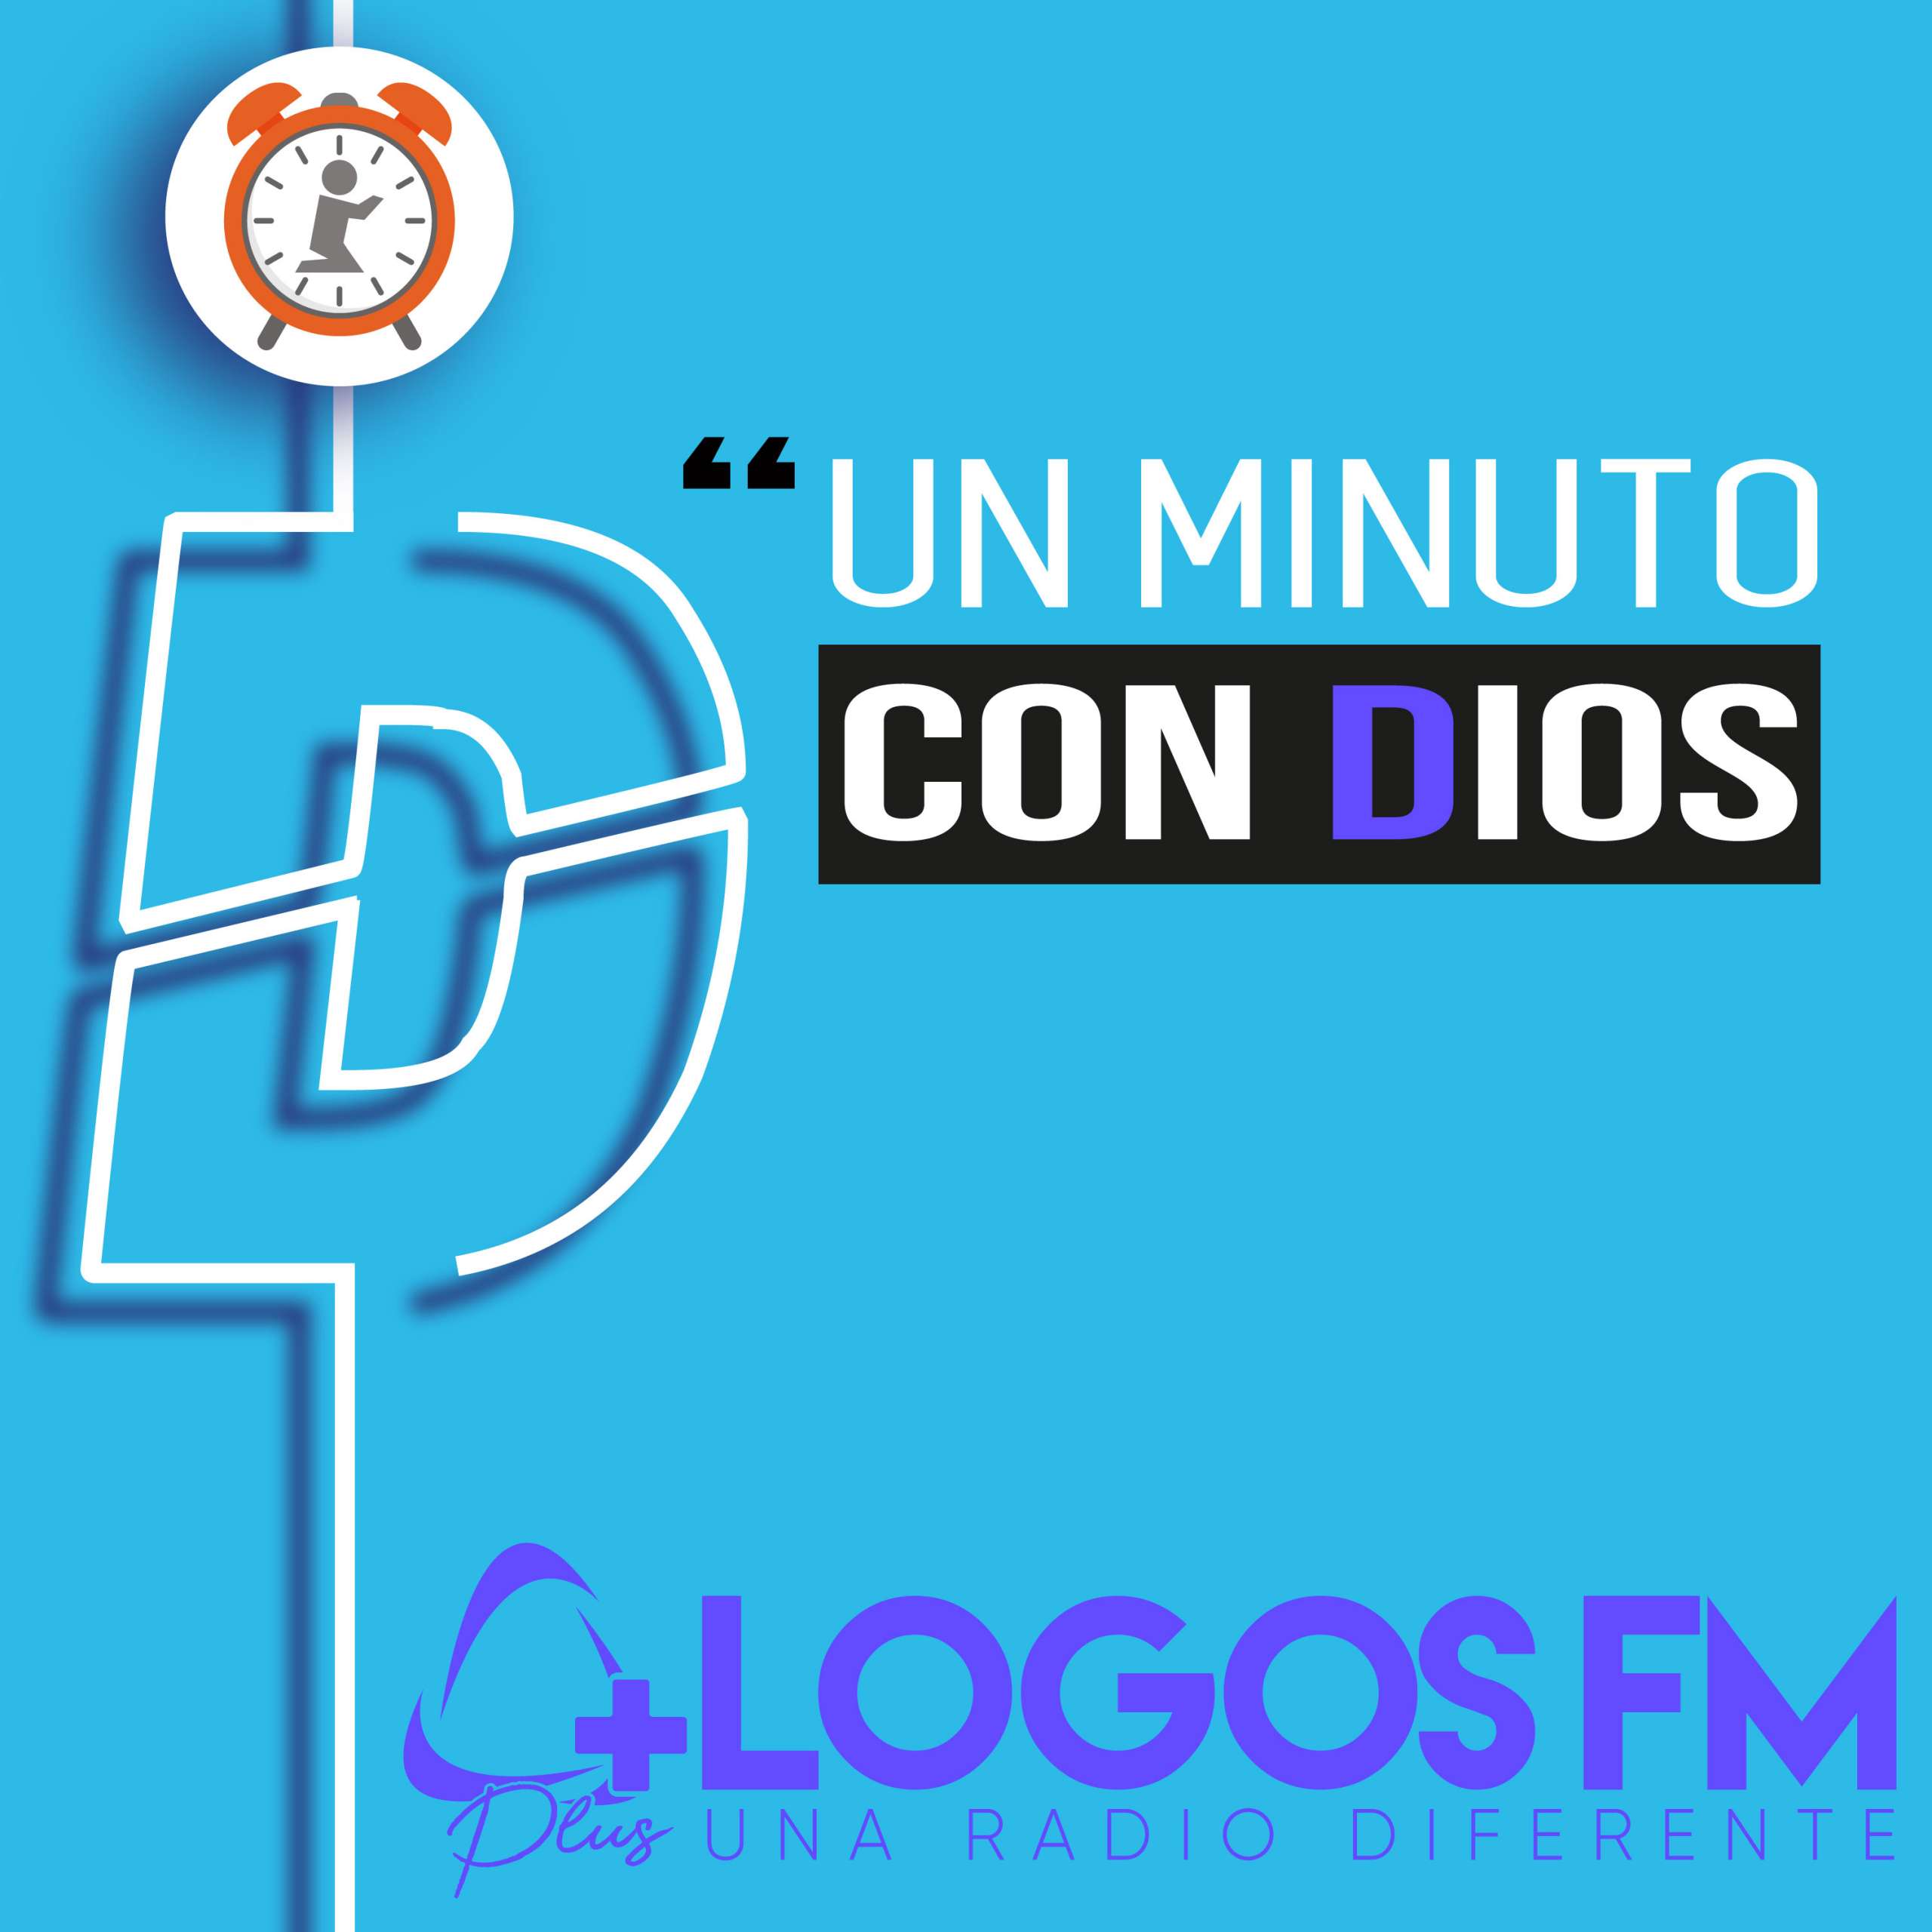 Un minuto con Dios - 444 - Loida Vargas